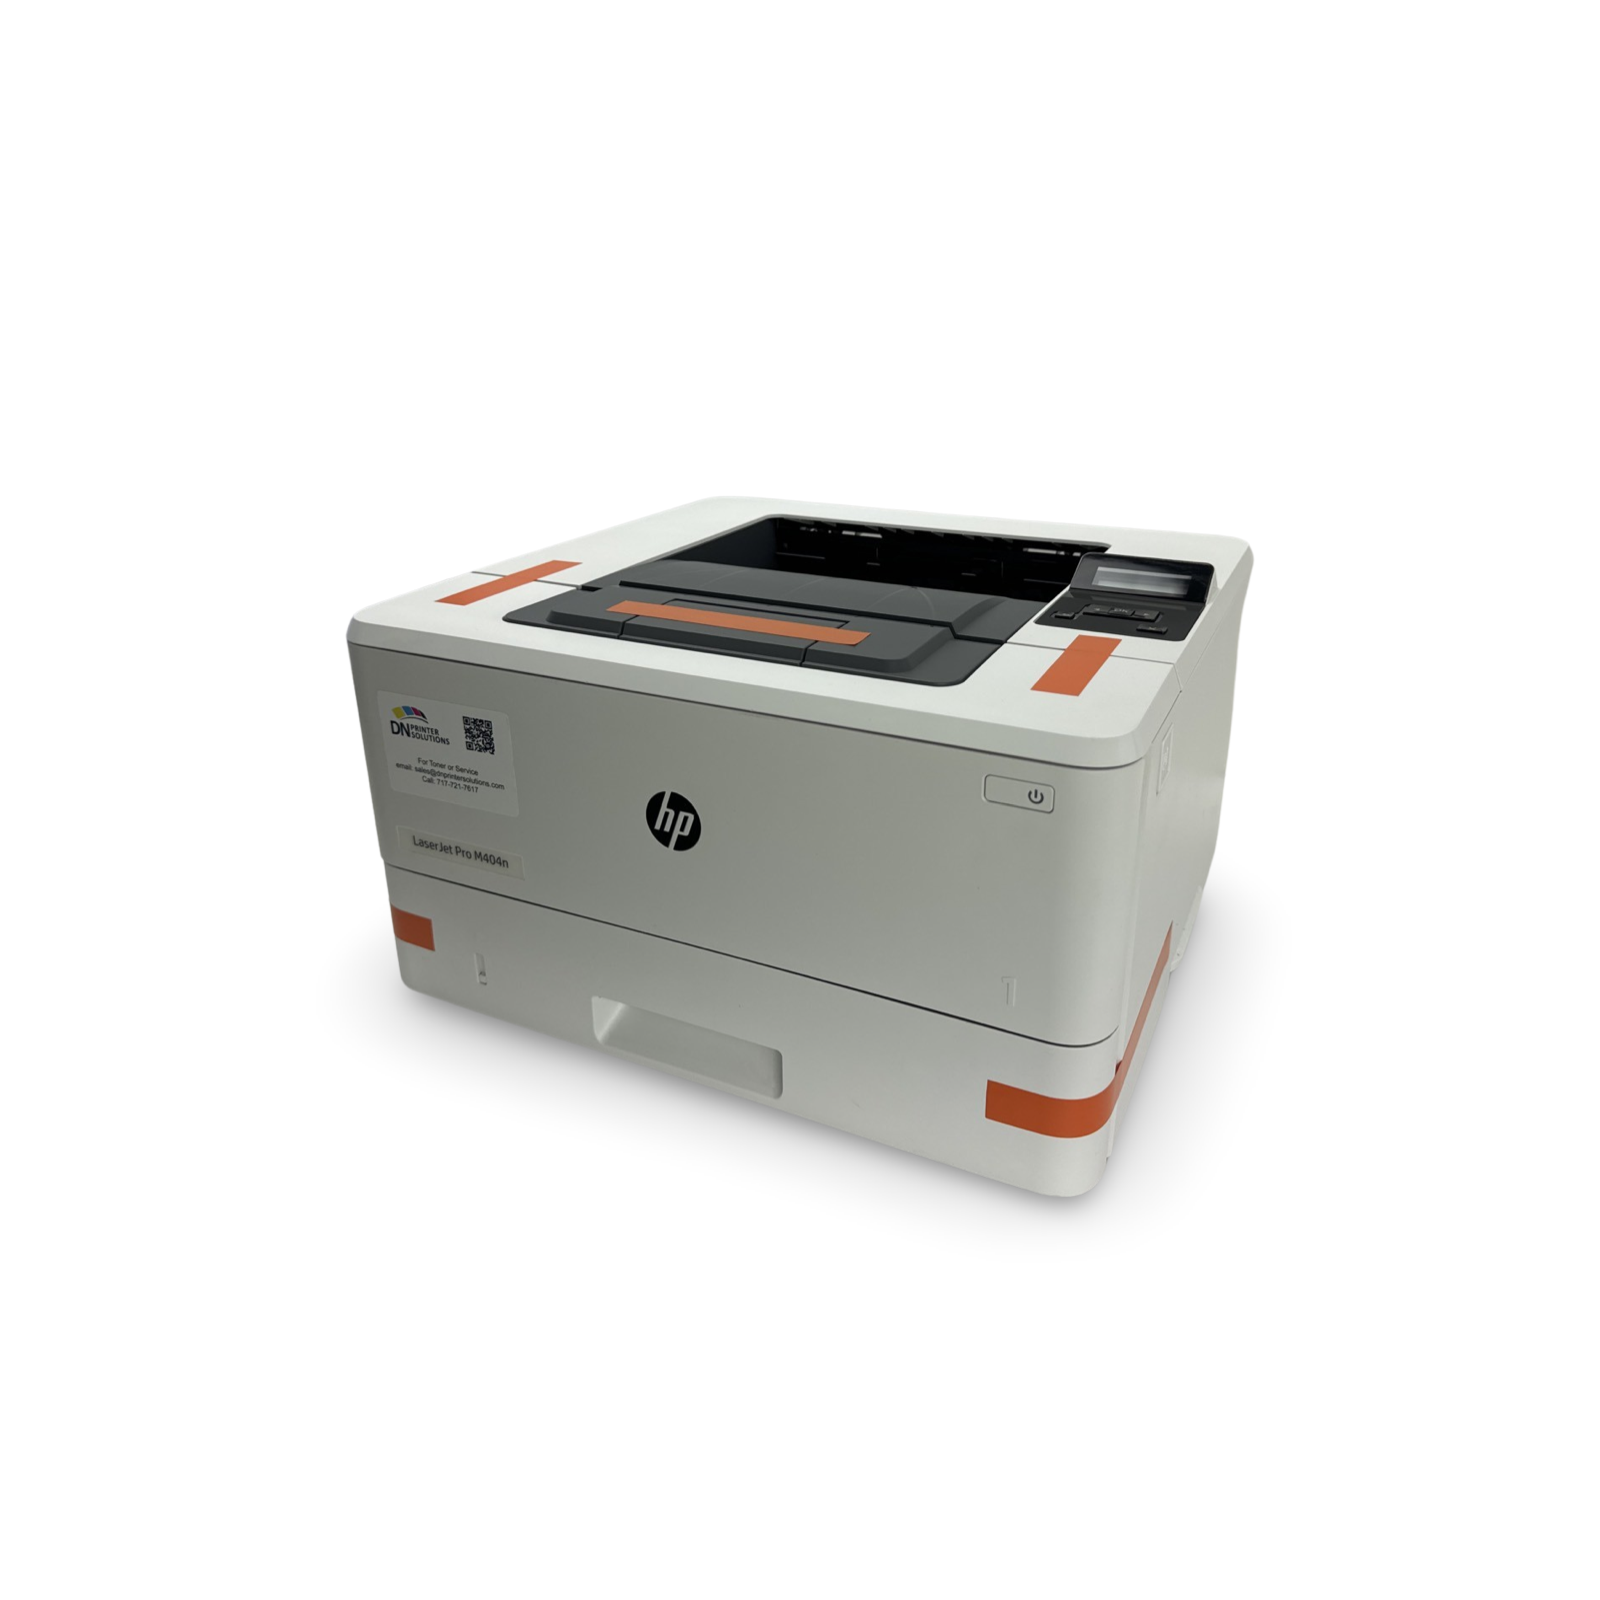 HP LaserJet Pro M404n Printer W1A52A Brand New